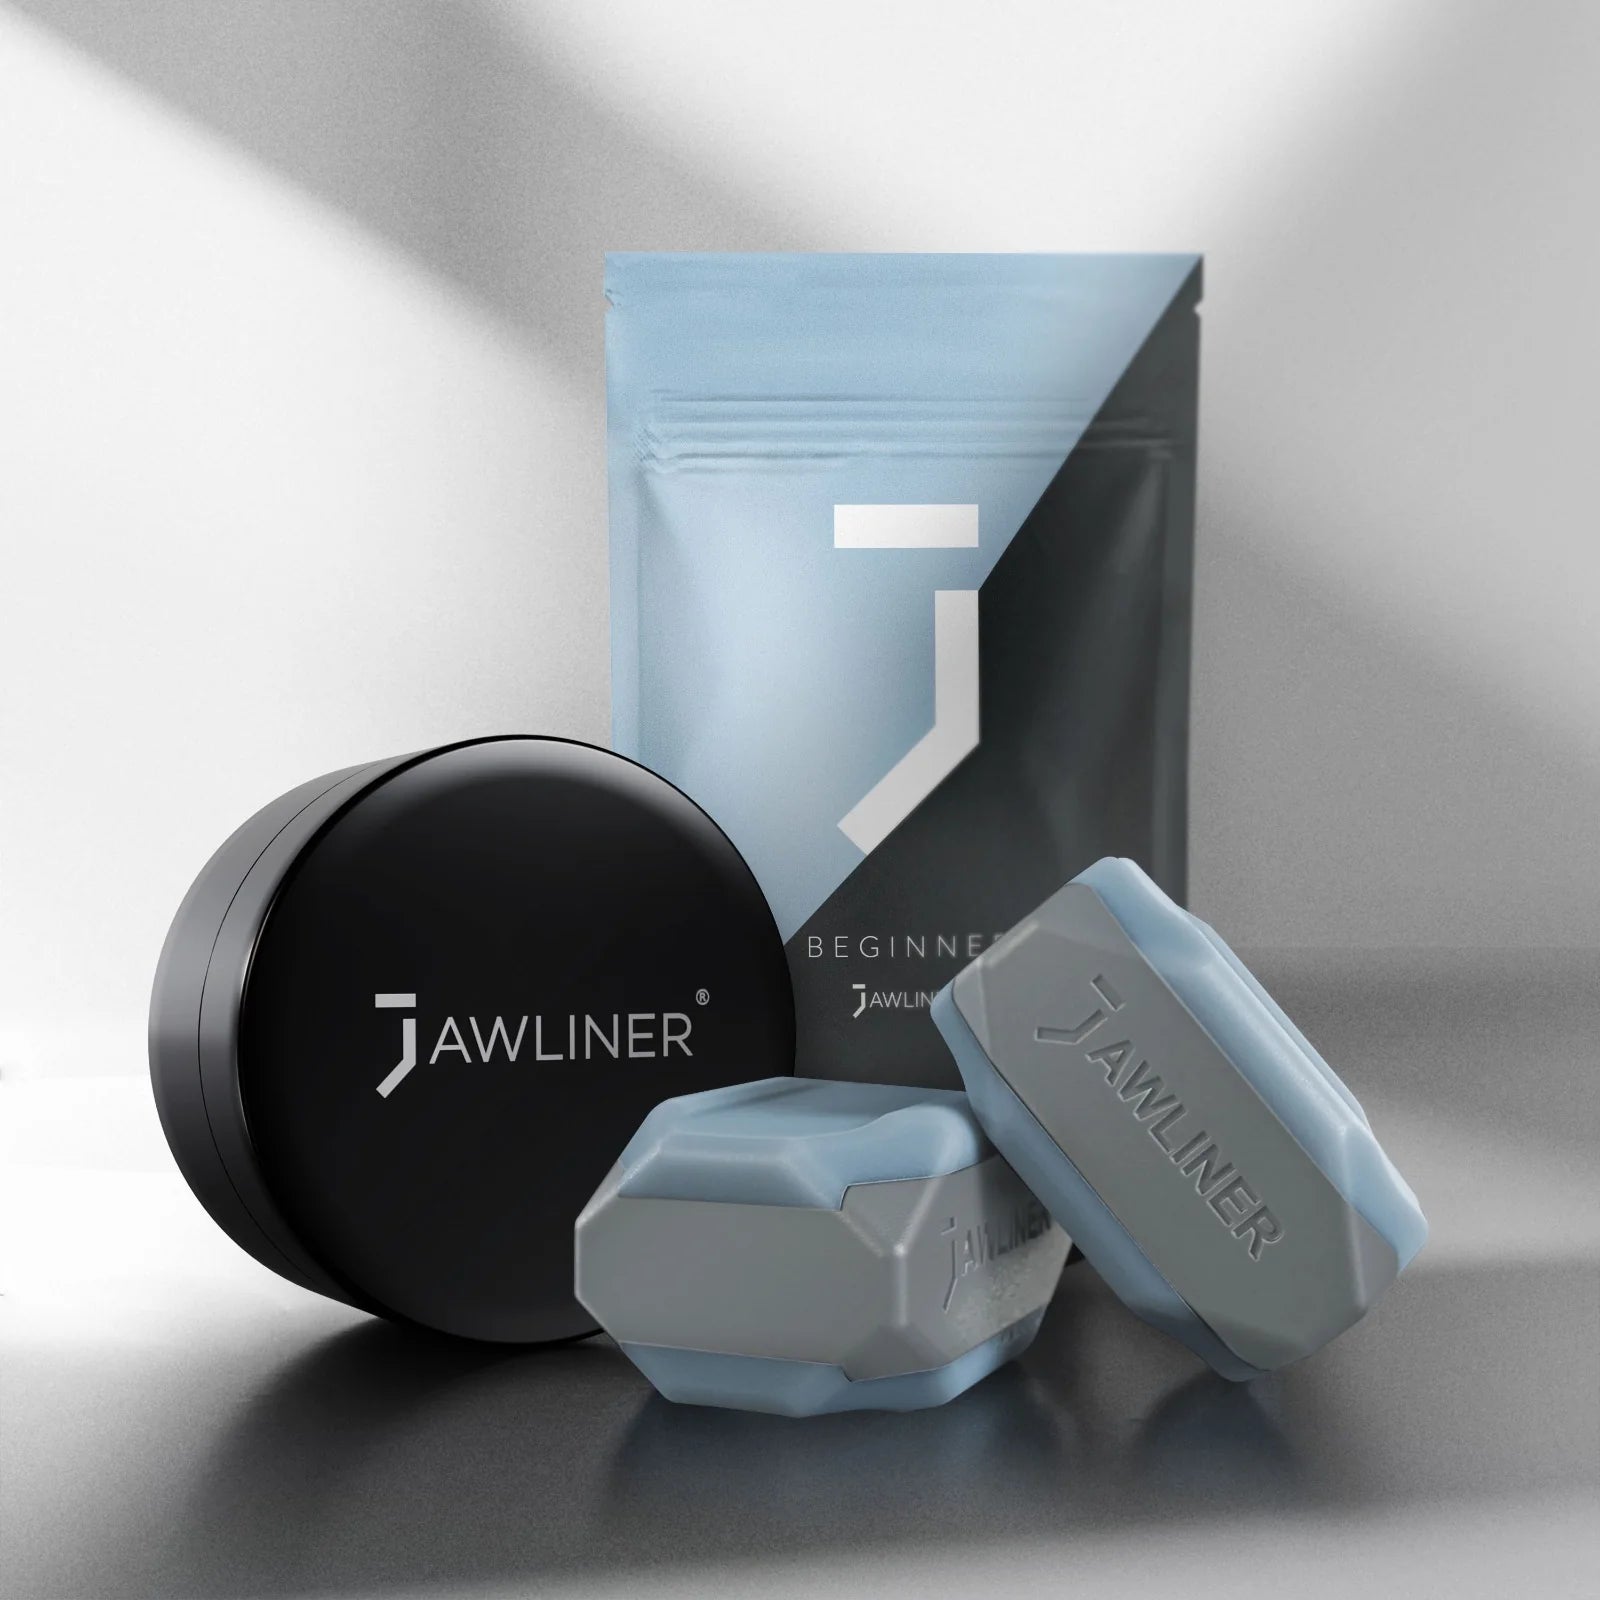 Jawliner® 3.0 entrenador de mandíbula – Jawliner MX